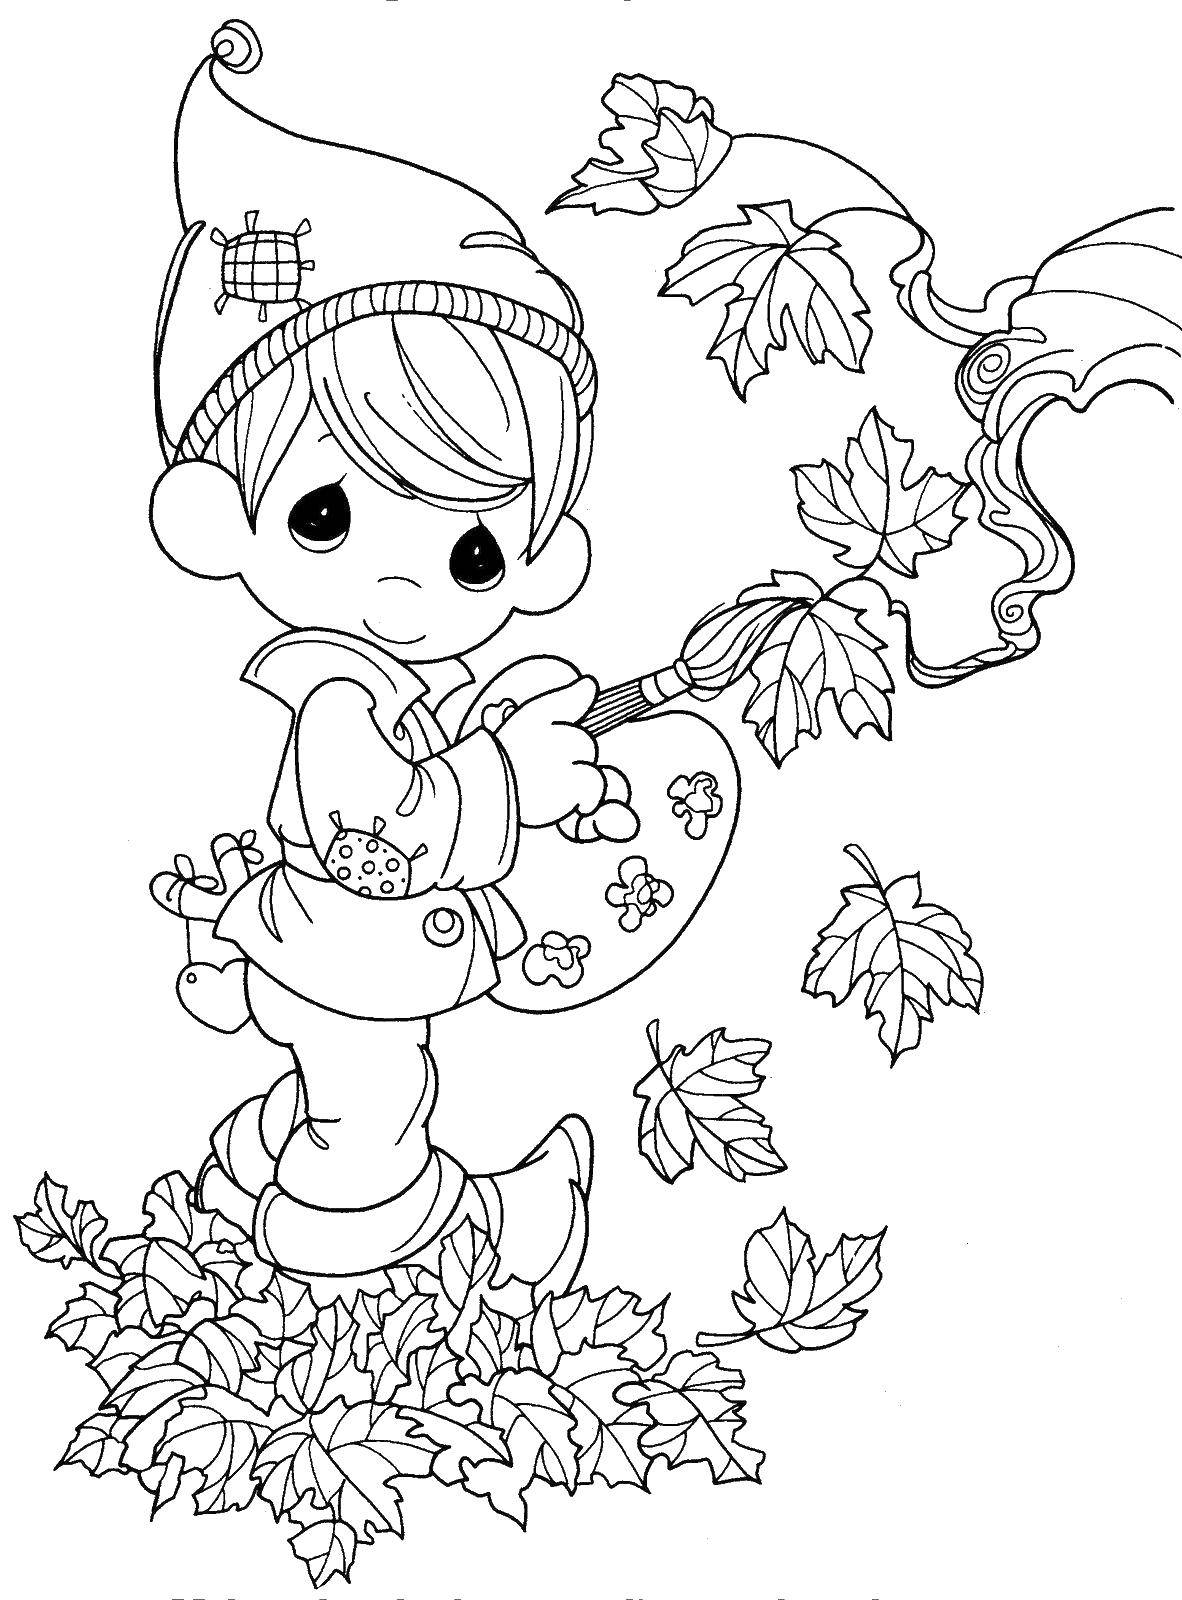 Раскраска мальчика в осеннем парке с листьями (осень, листопад, листья)